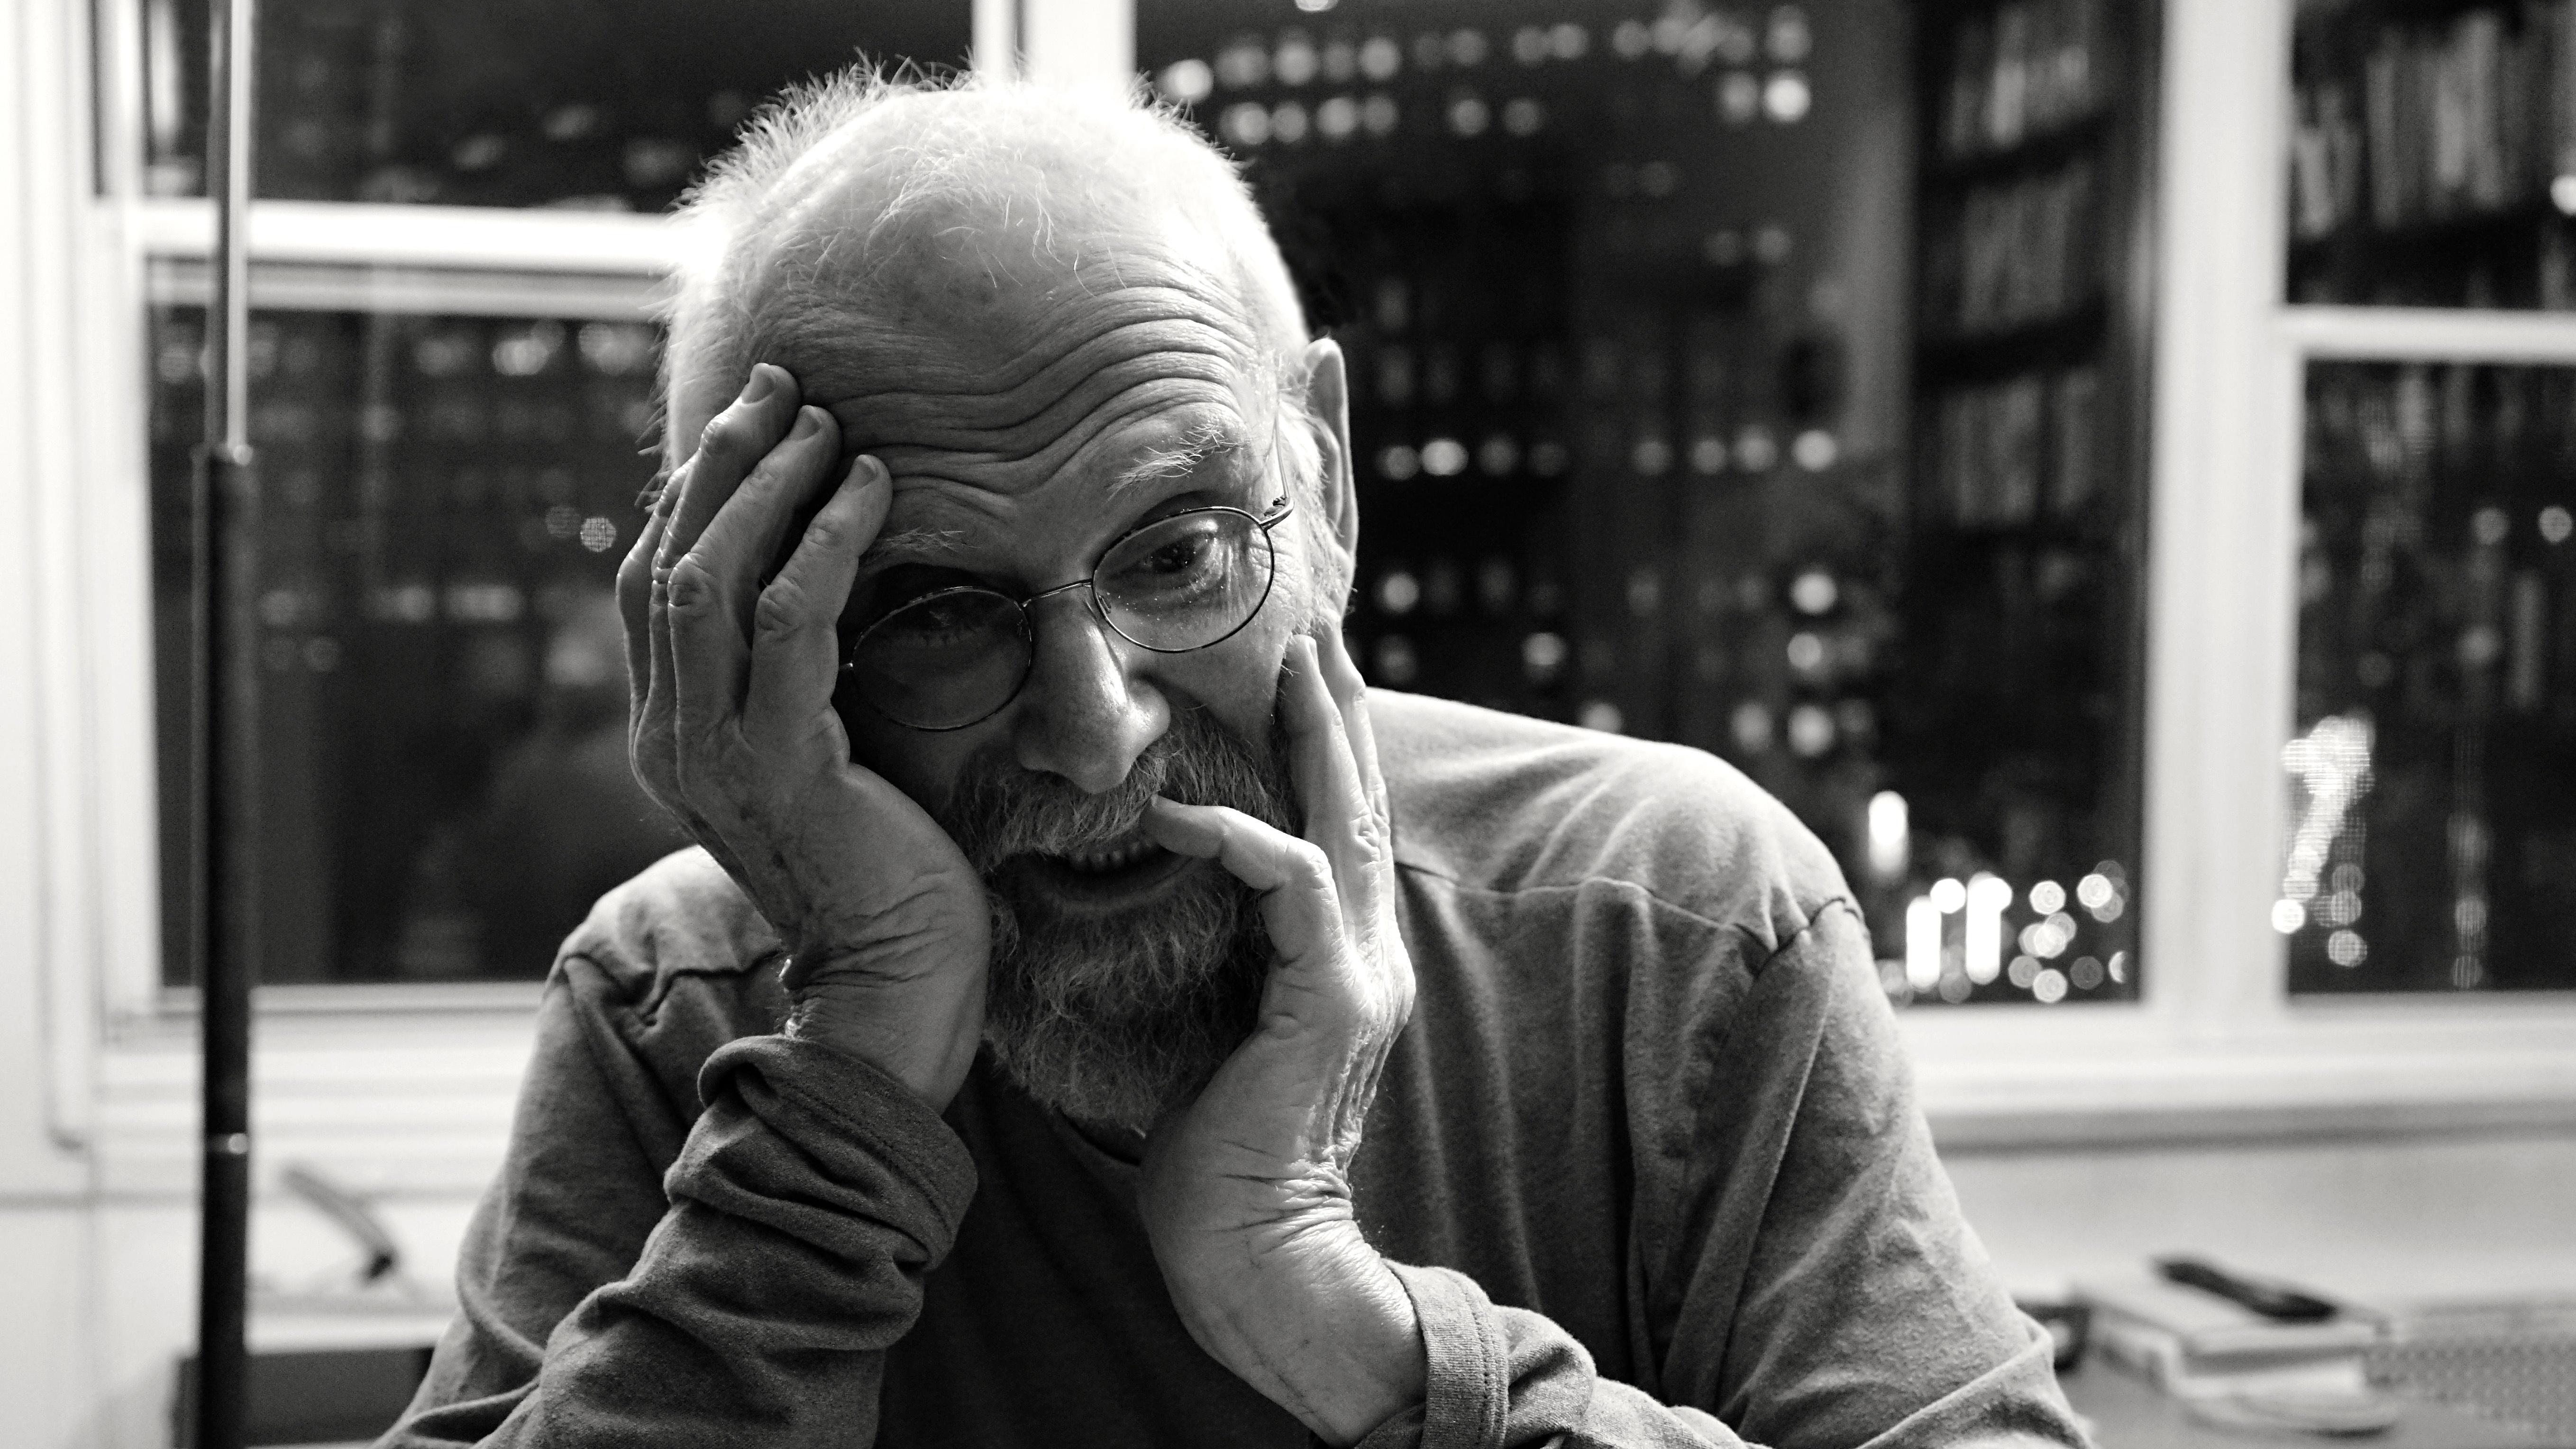 Oliver Sacks, famed neurologist, dies in New York